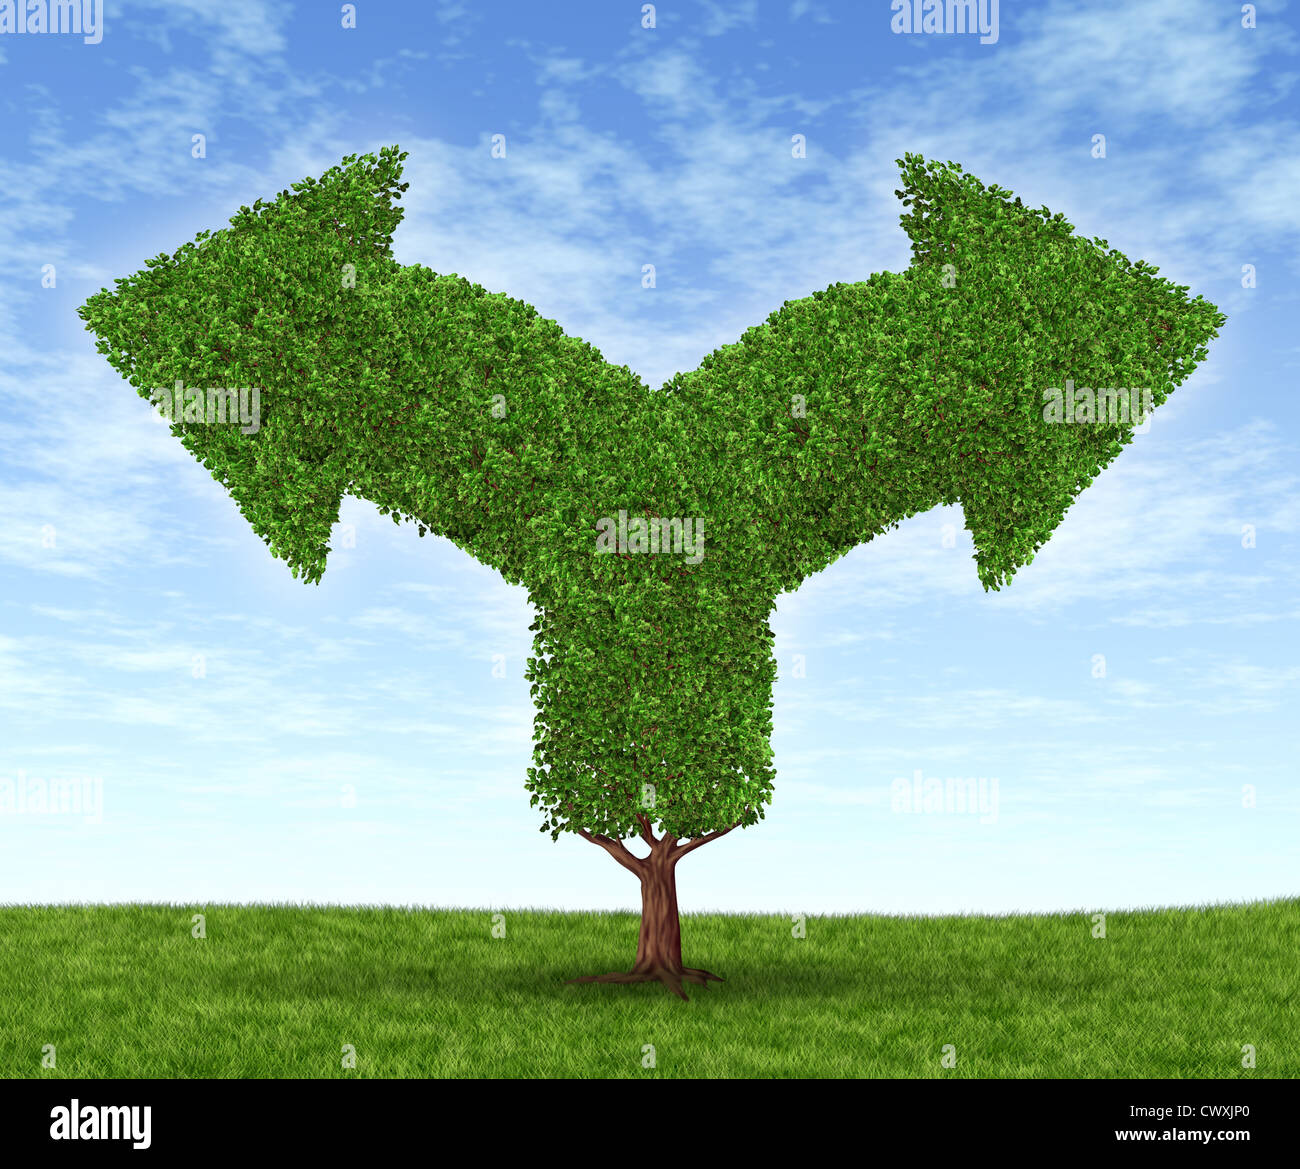 Wachsende Geschäftsmöglichkeiten und finanziellen Dilemma durch Zunahme der finanziellen Vermögen als Baum und Blätter in der Form des gegabelten Pfeile auf einen blauen Sommerhimmel mit grünen Rasen in entgegengesetzte Richtungen gehen. Stockfoto